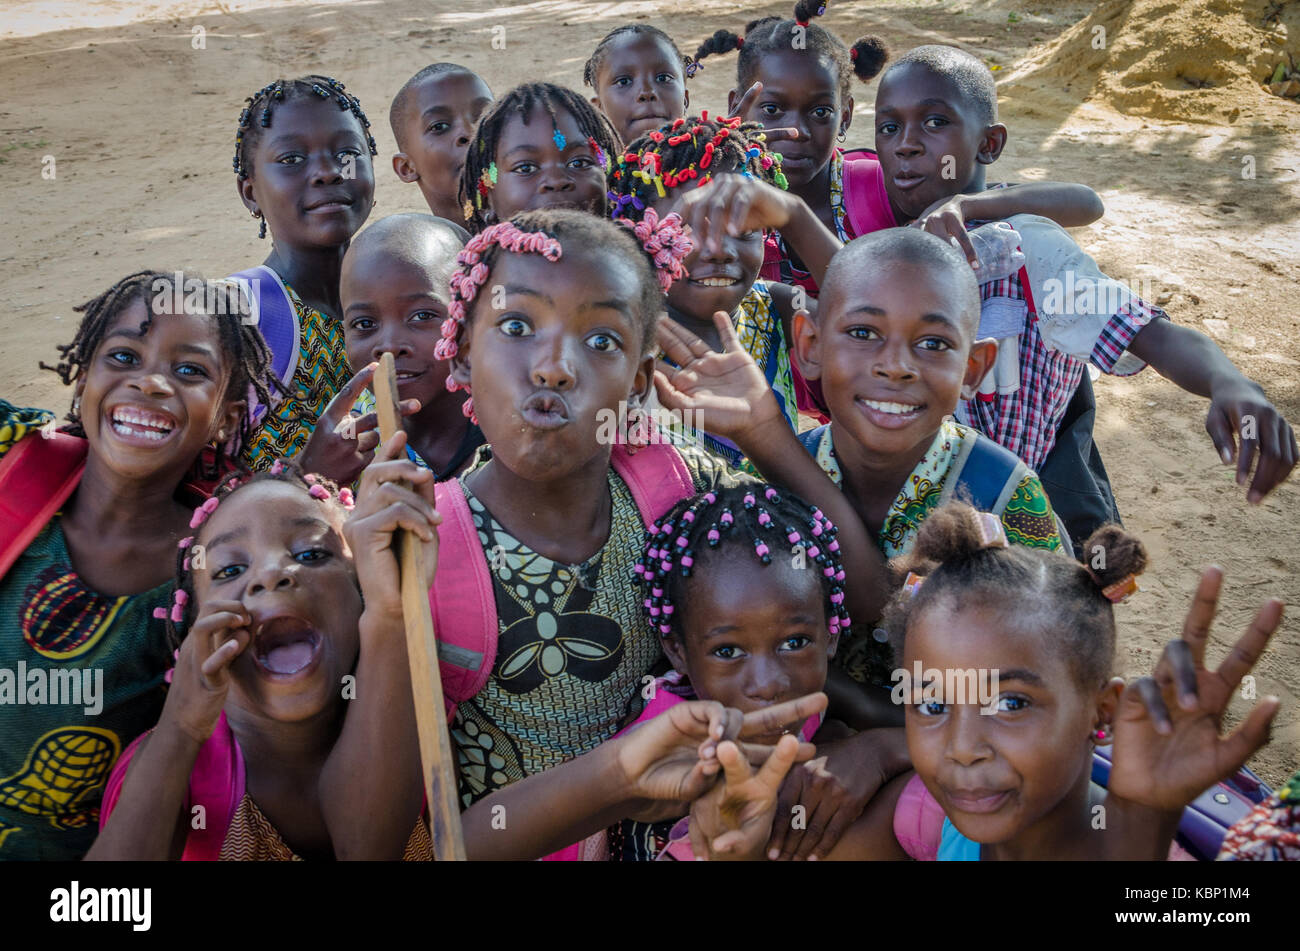 Beaucoup de jeunes enfants africains avec des visages joliment décorés pour faire des cheveux pour la caméra, Cabinda, Angola, Afrique Banque D'Images